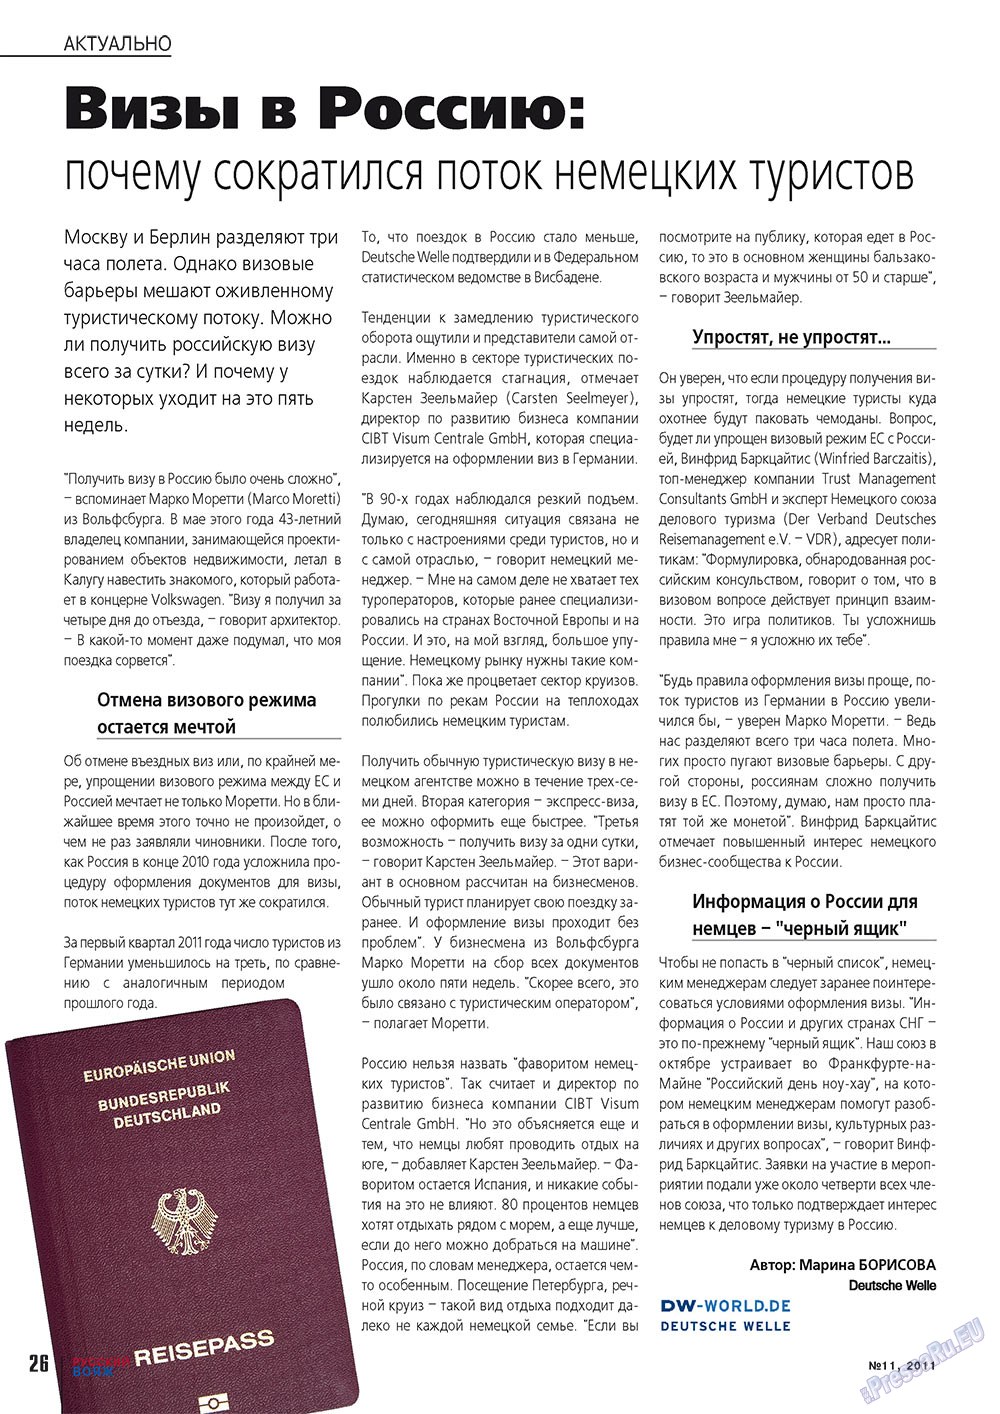 Русский вояж (журнал). 2011 год, номер 11, стр. 26